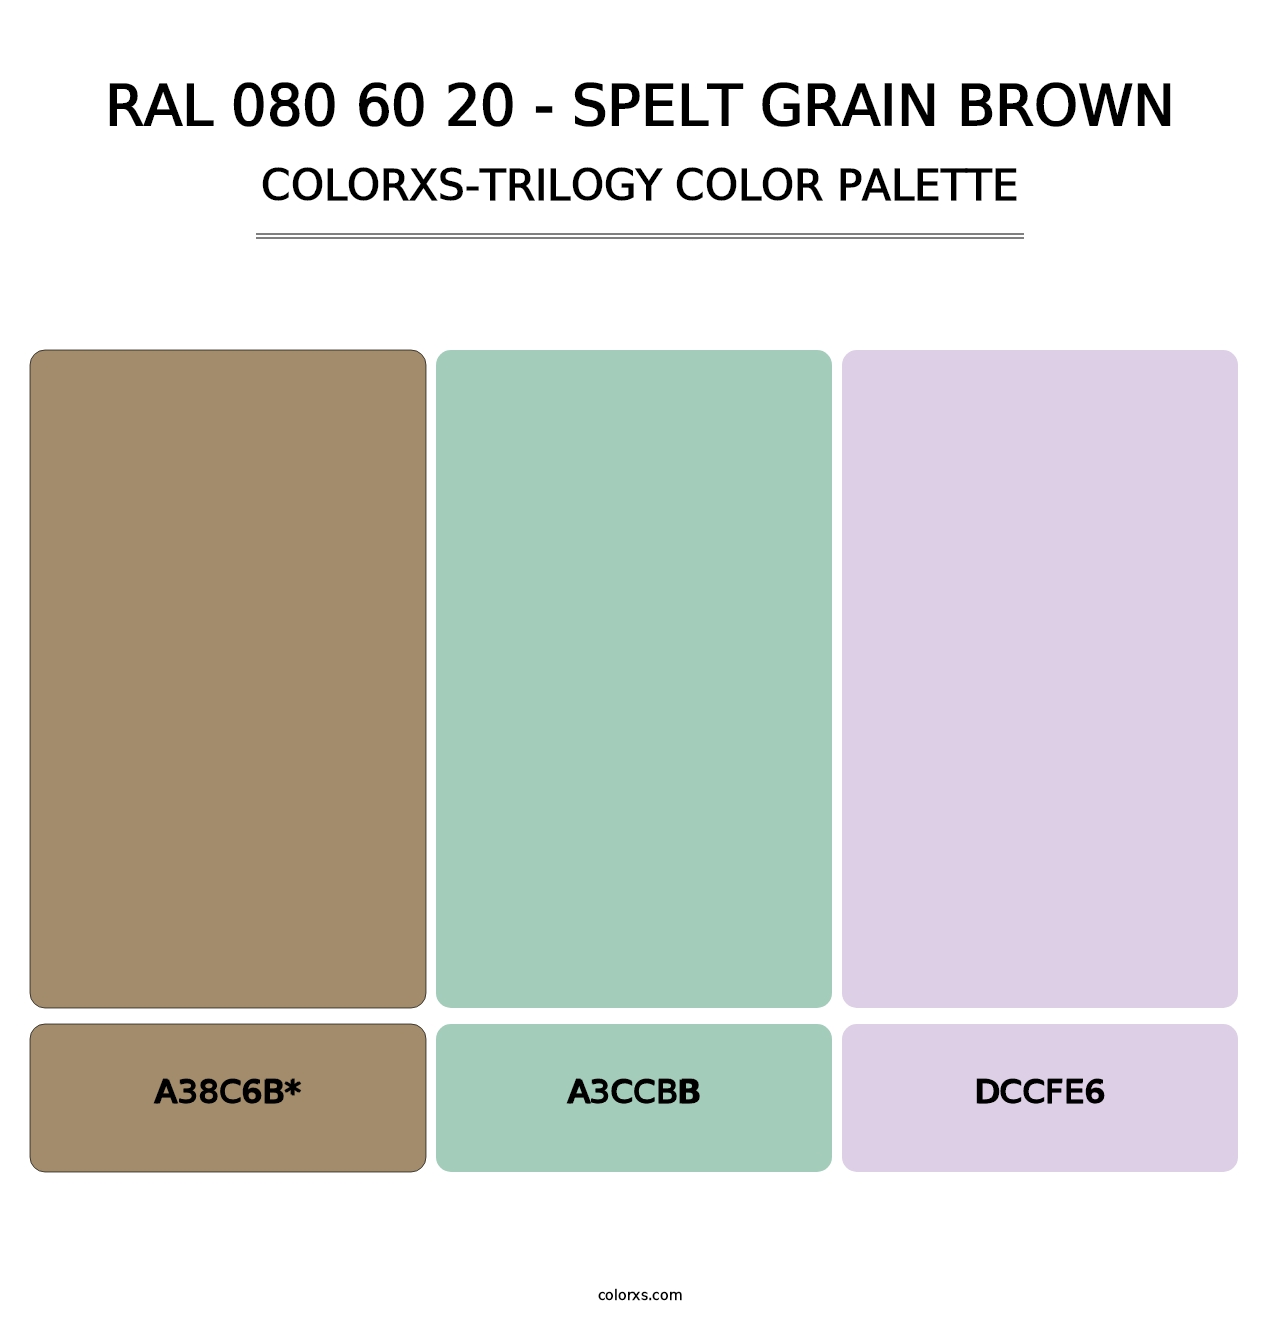 RAL 080 60 20 - Spelt Grain Brown - Colorxs Trilogy Palette